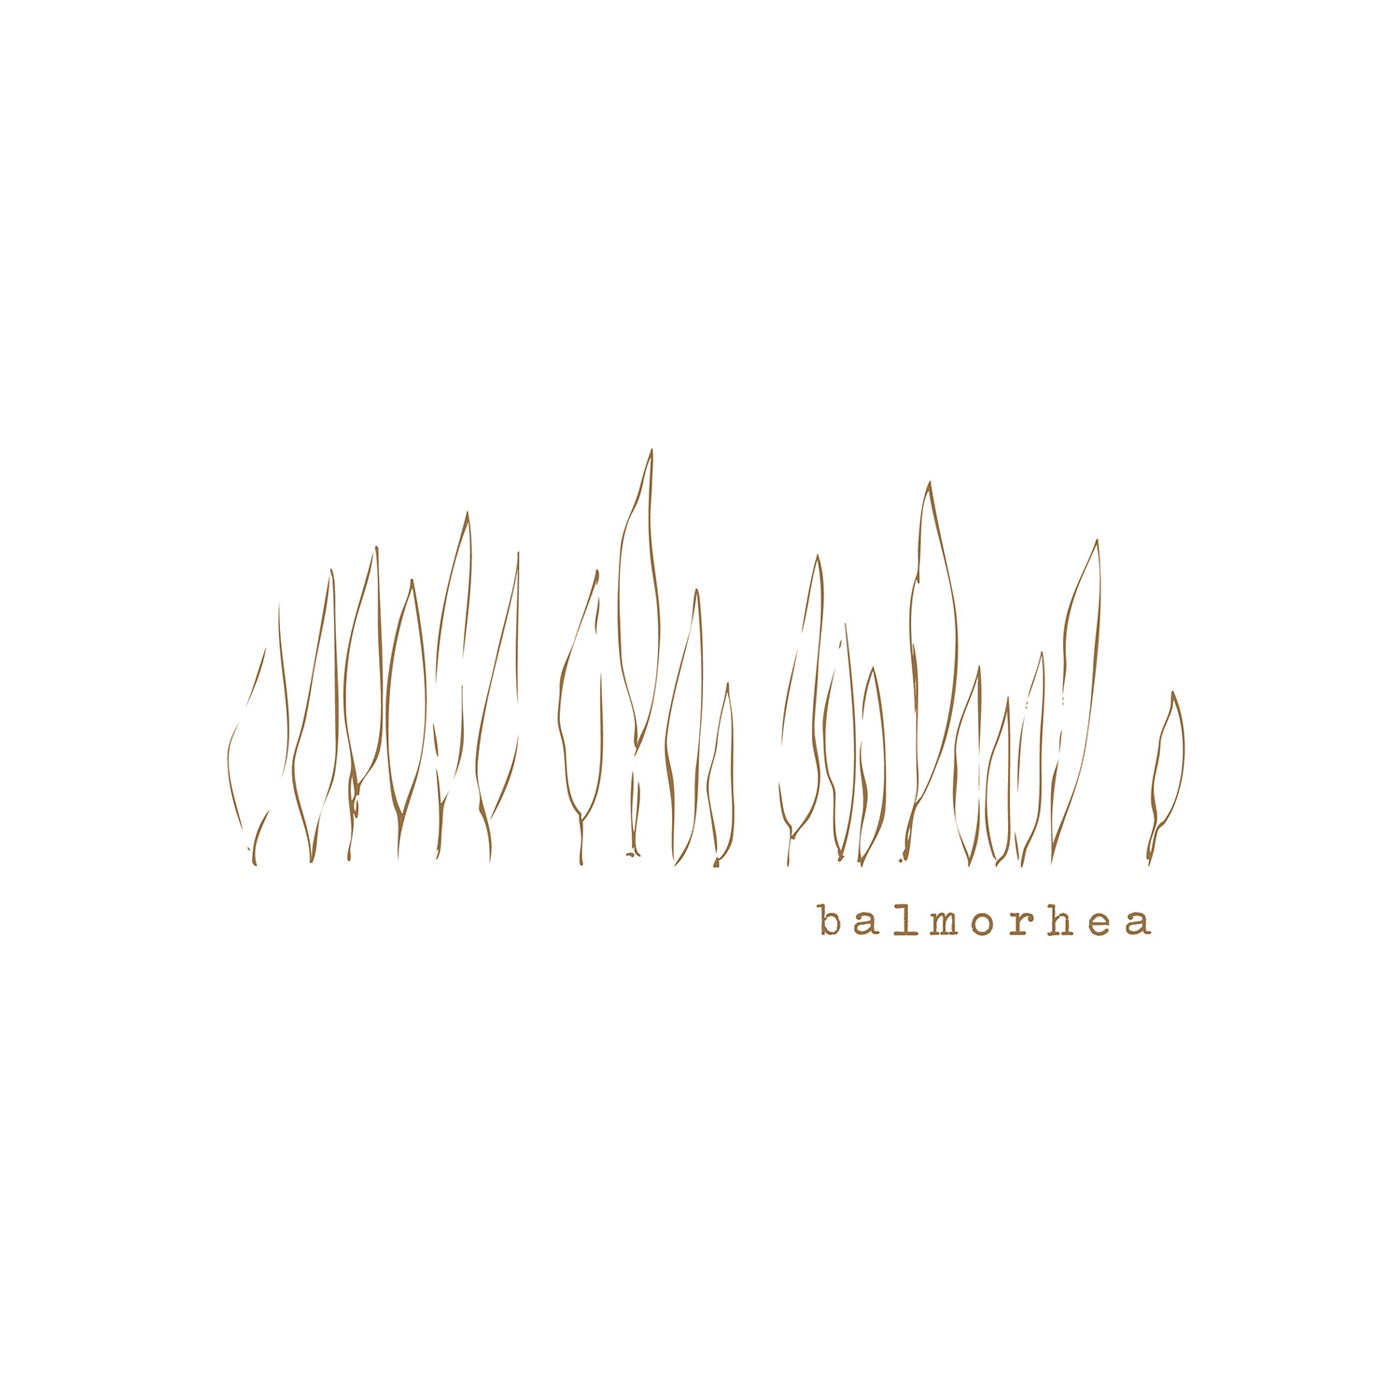 Balmorhea ‎– Balmorhea - New LP Record 2014 Western USA 180 gram Vinyl - Post Rock